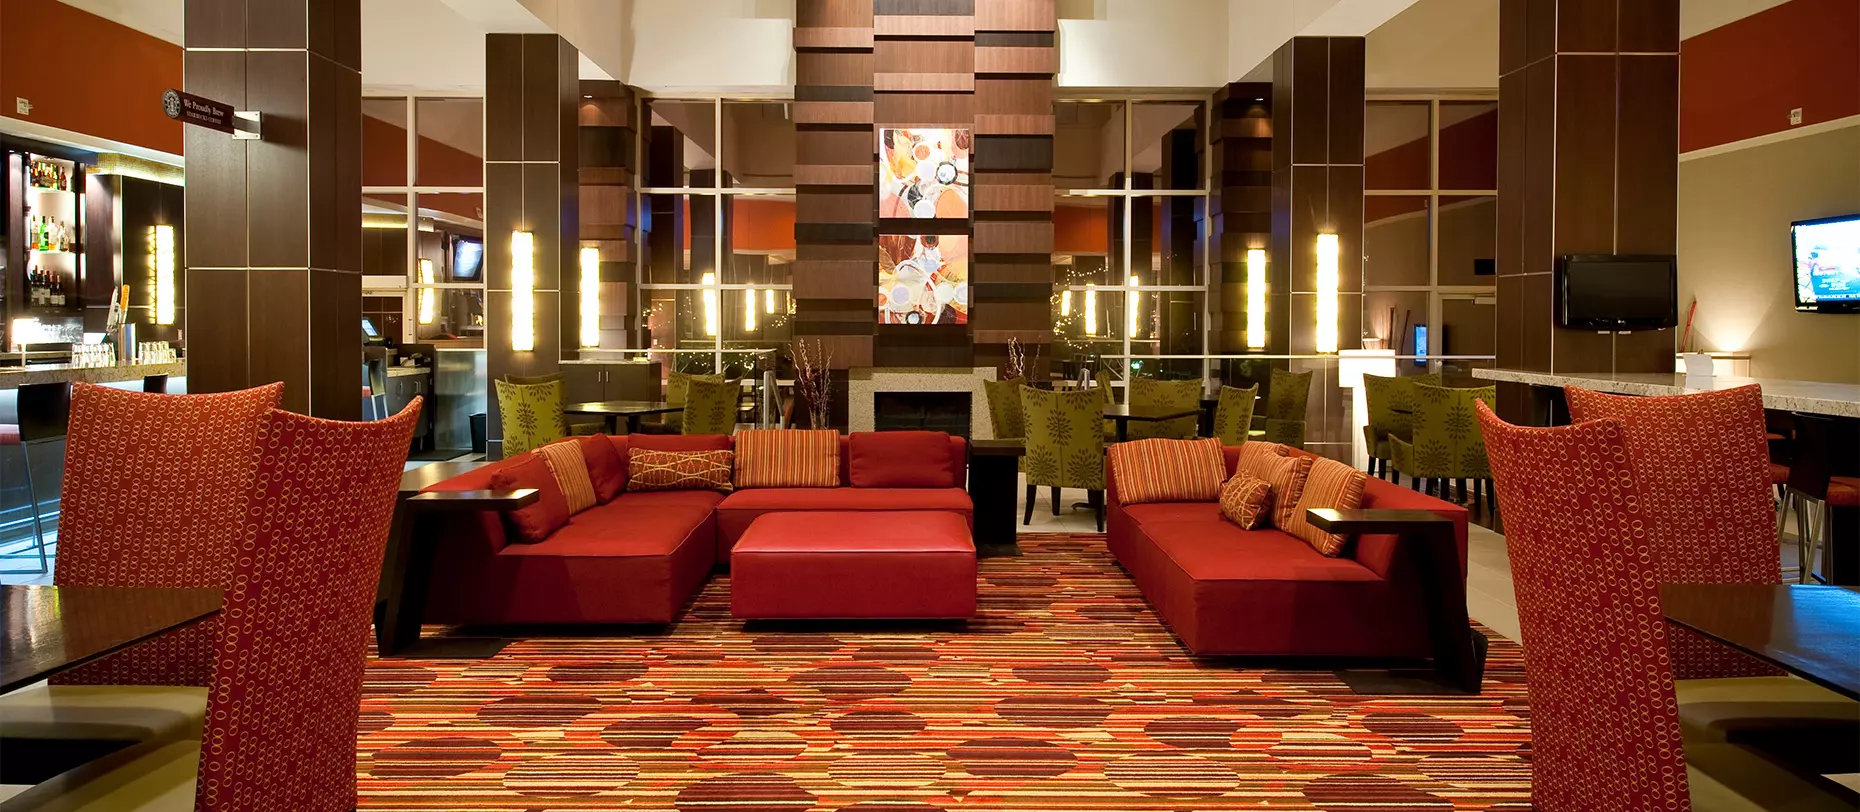 Marriott Hotel lobby